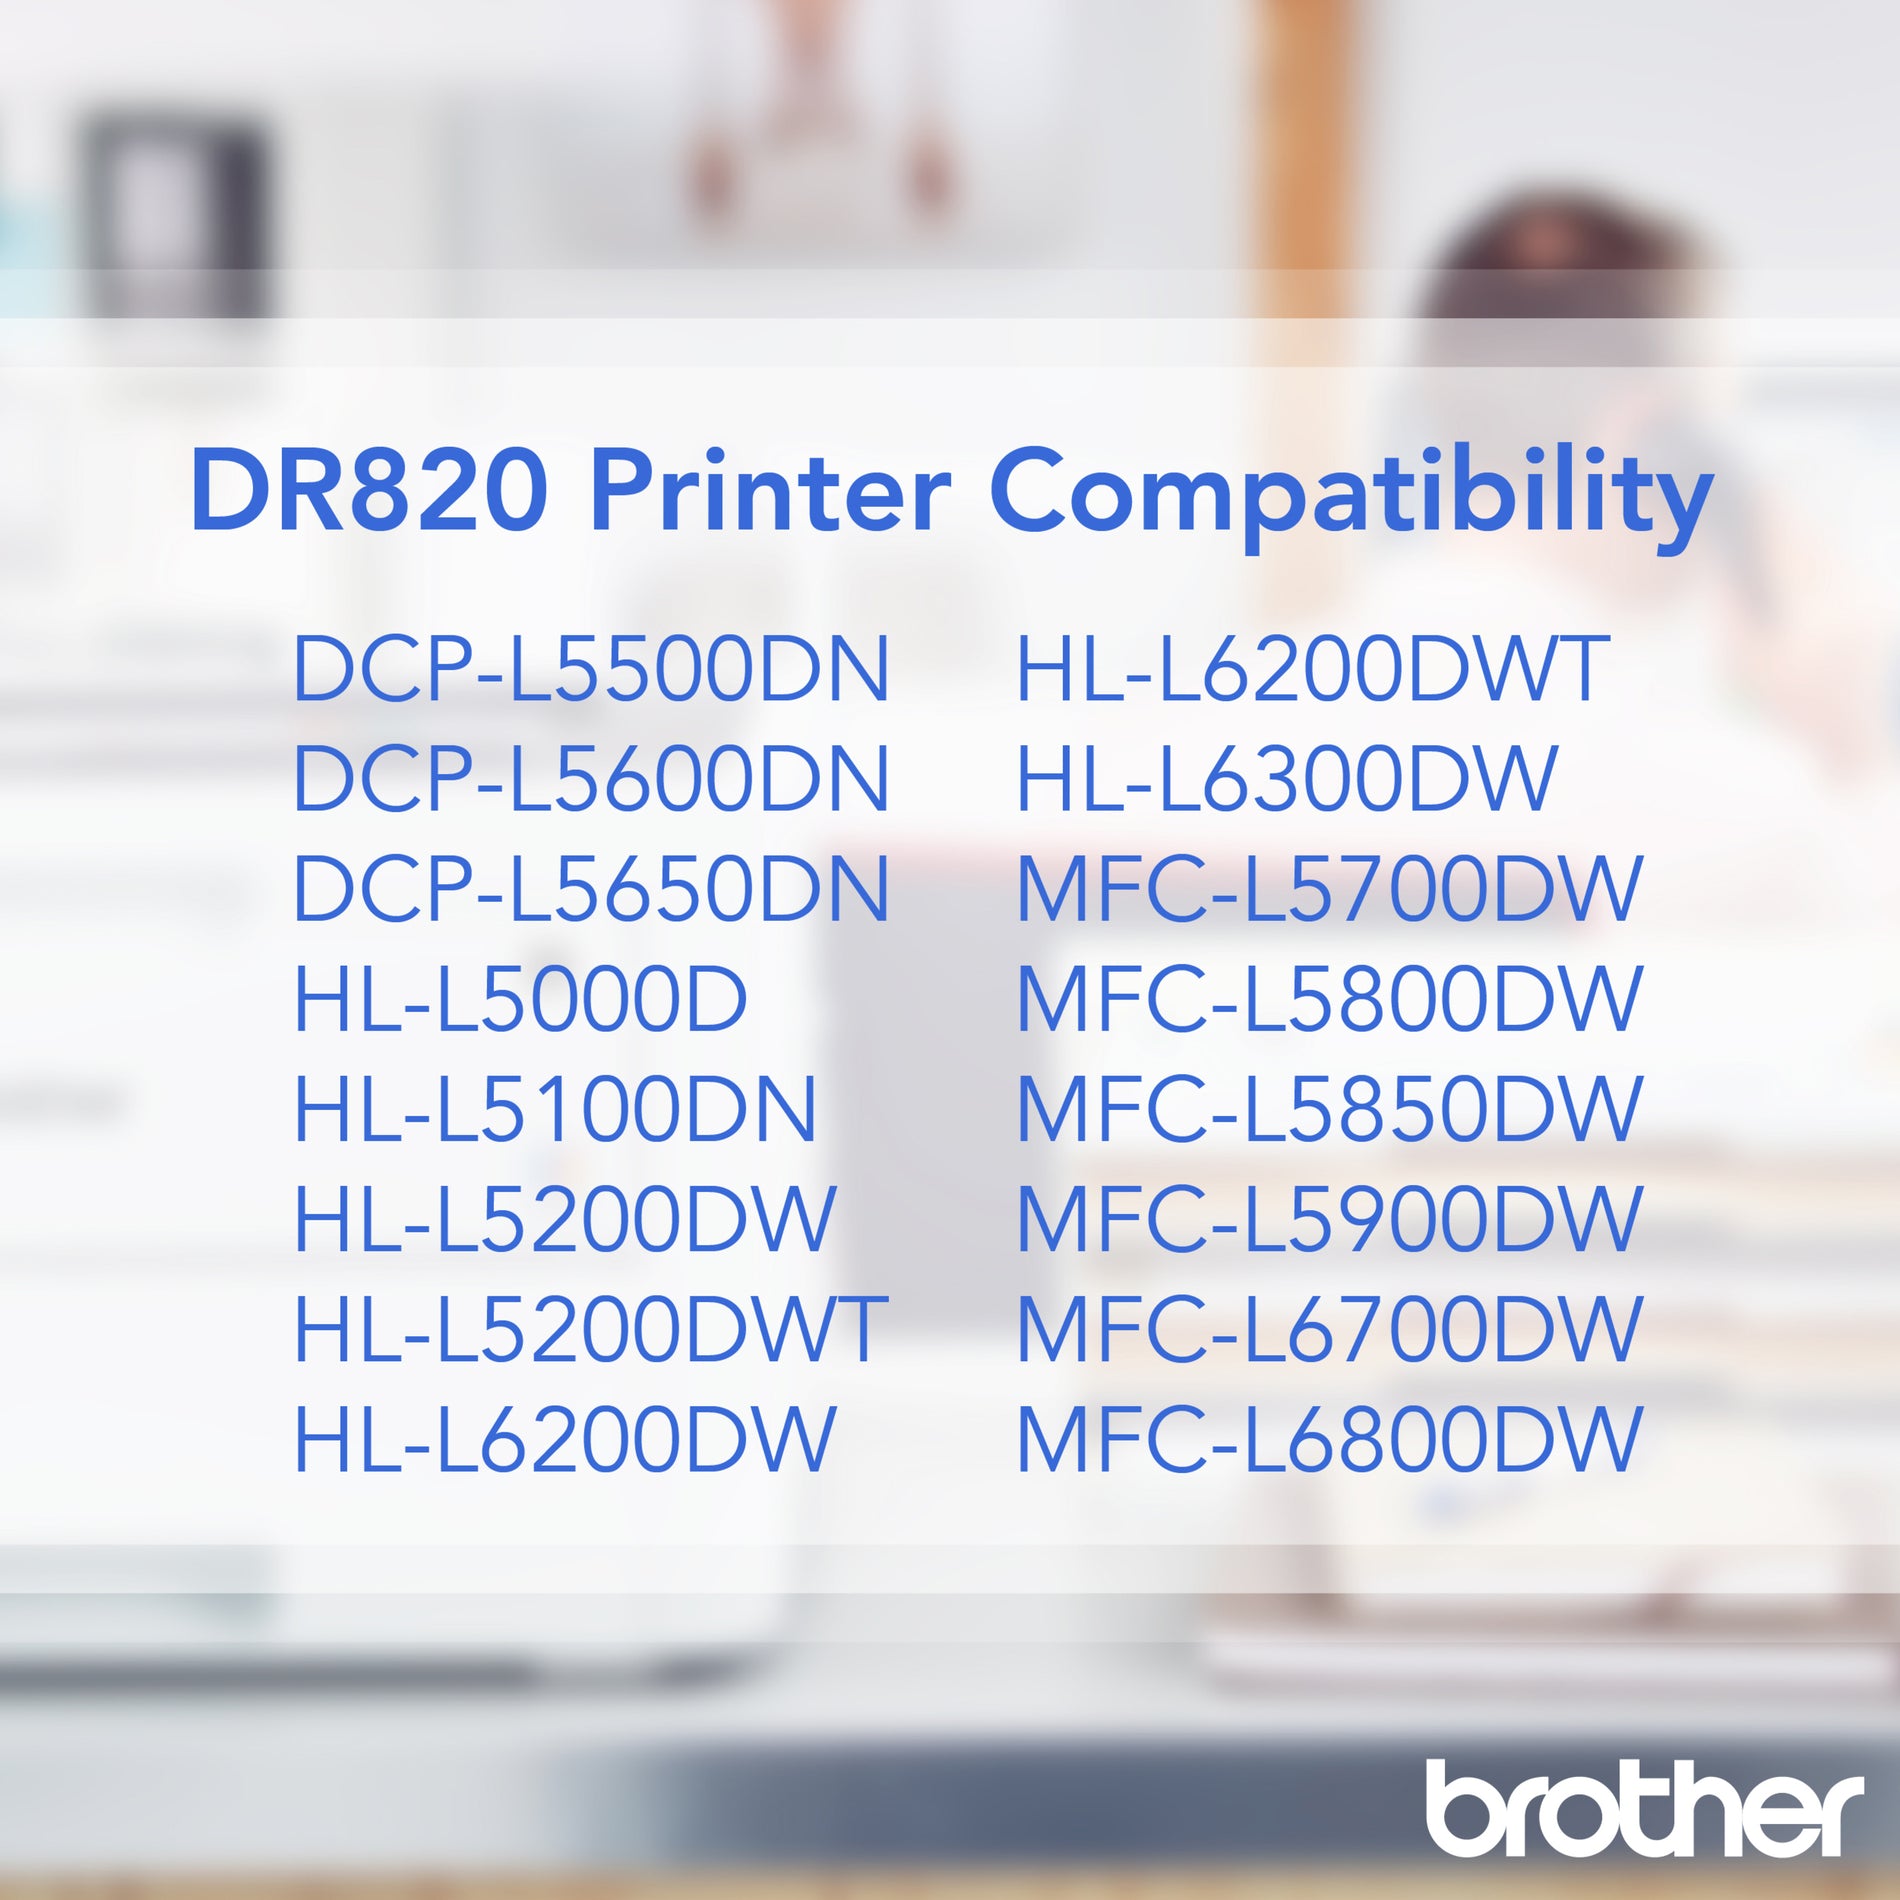 ブラザー DR820 ドラムユニット - 純正、レーザー、ブラック - 30000ページの印刷可能性 ブラザー - 兄弟